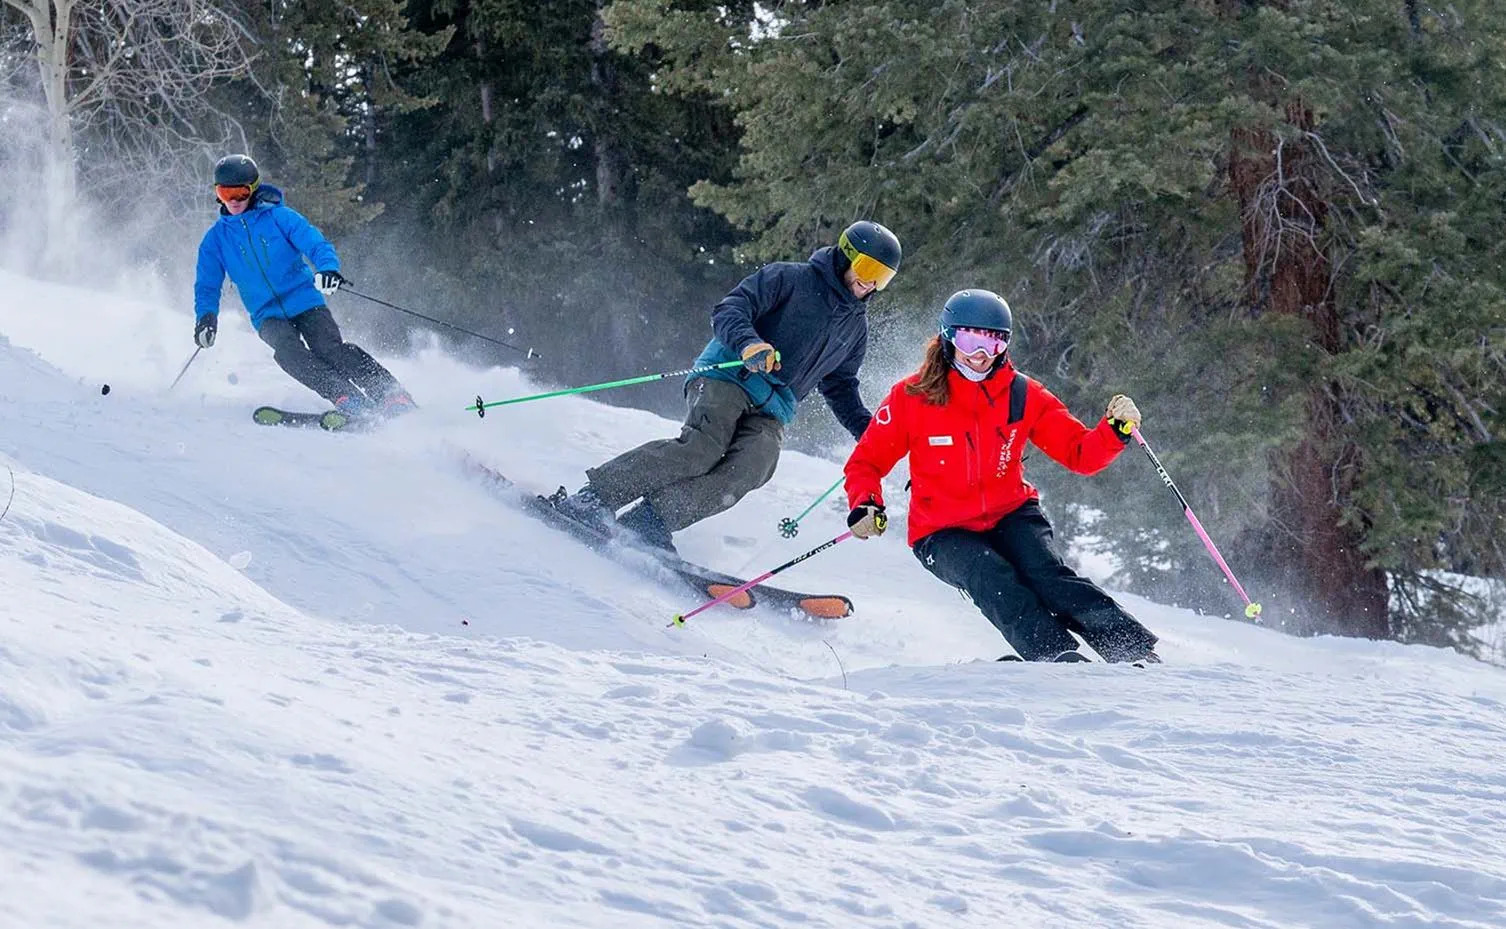 成人滑雪小组课程及滑雪技能提升课程